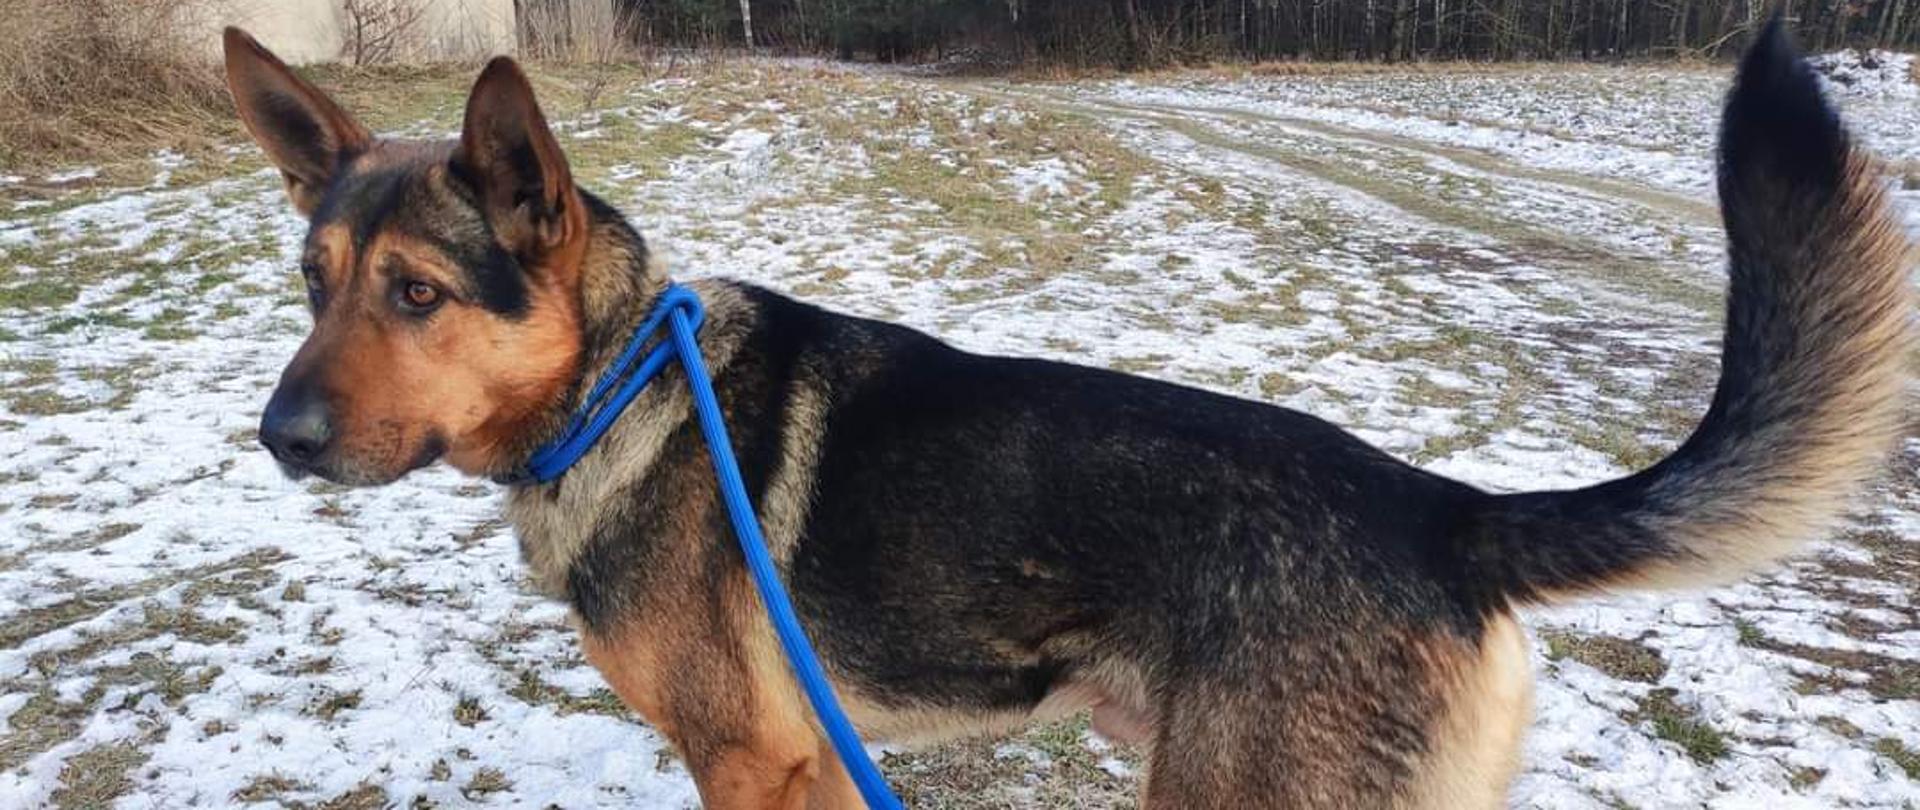 Pies - samiec w typie owczarka niemieckiego, umaszczenie czarno-podpalane. Pies stoi na łące lekko pokrytej śniegiem. Ma niebieską smycz. W tle las i zabudowania. 